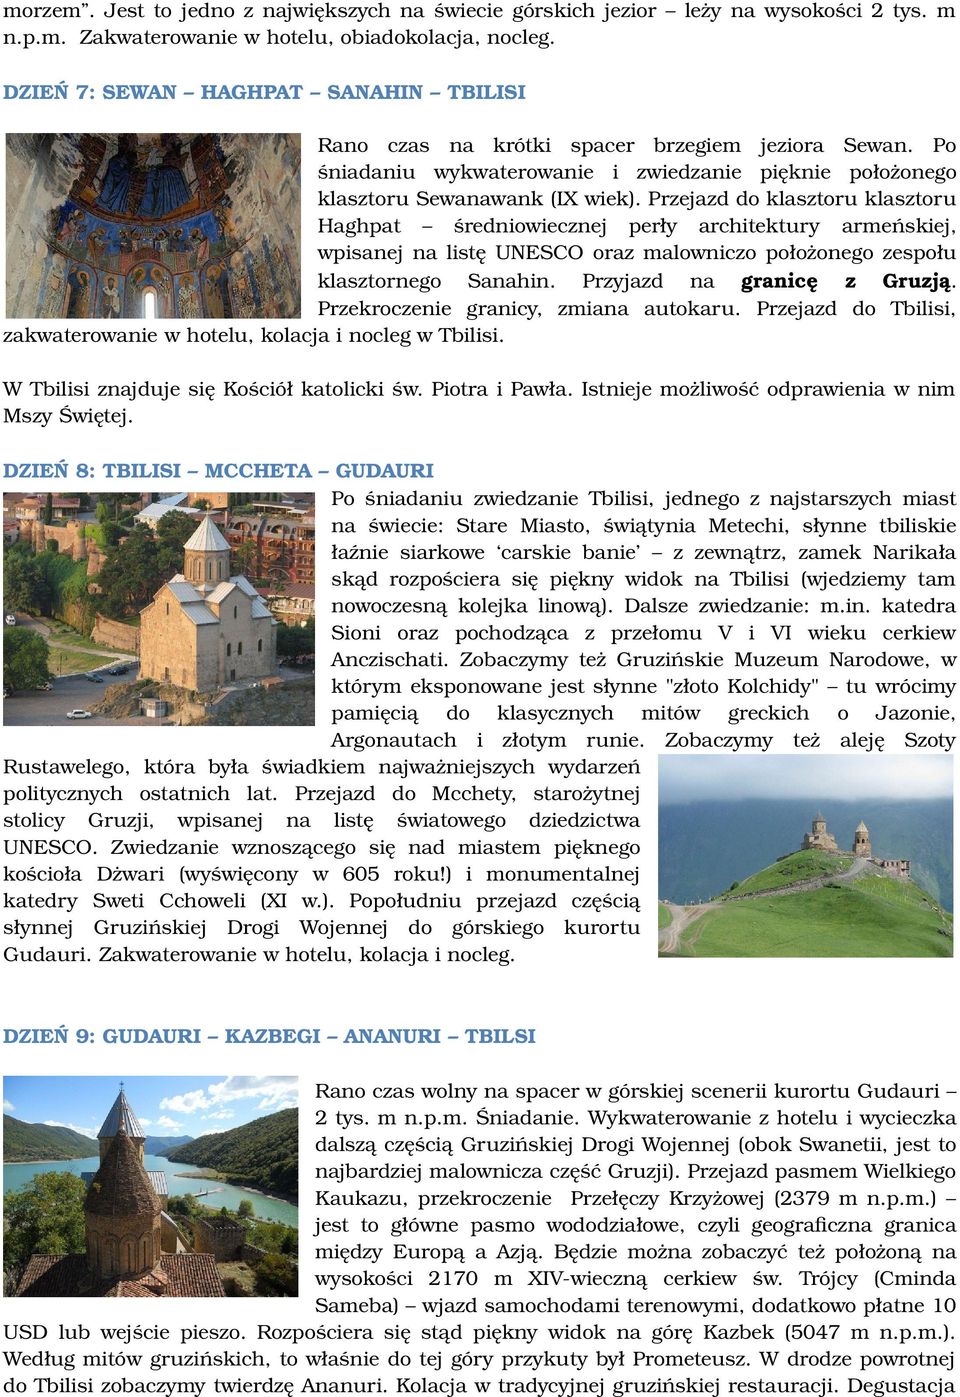 Przejazd do klasztoru klasztoru Haghpat średniowiecznej perły architektury armeńskiej, wpisanej na listę UNESCO oraz malowniczo położonego zespołu klasztornego Sanahin. Przyjazd na granicę z Gruzją.